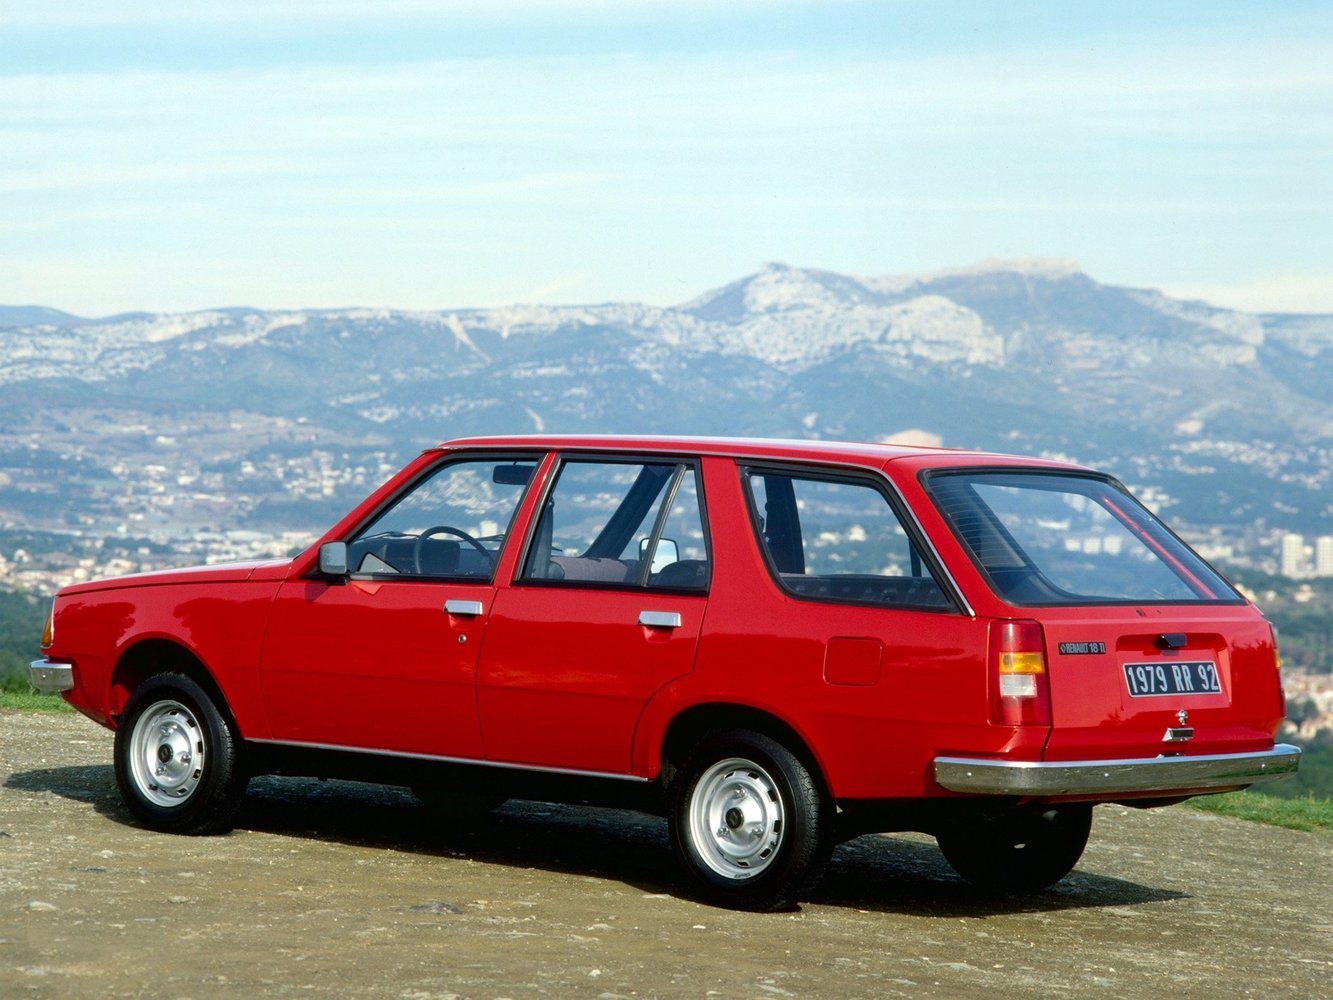 универсал Renault 18 1978 - 1986г выпуска модификация 1.4 MT (64 л.с.)